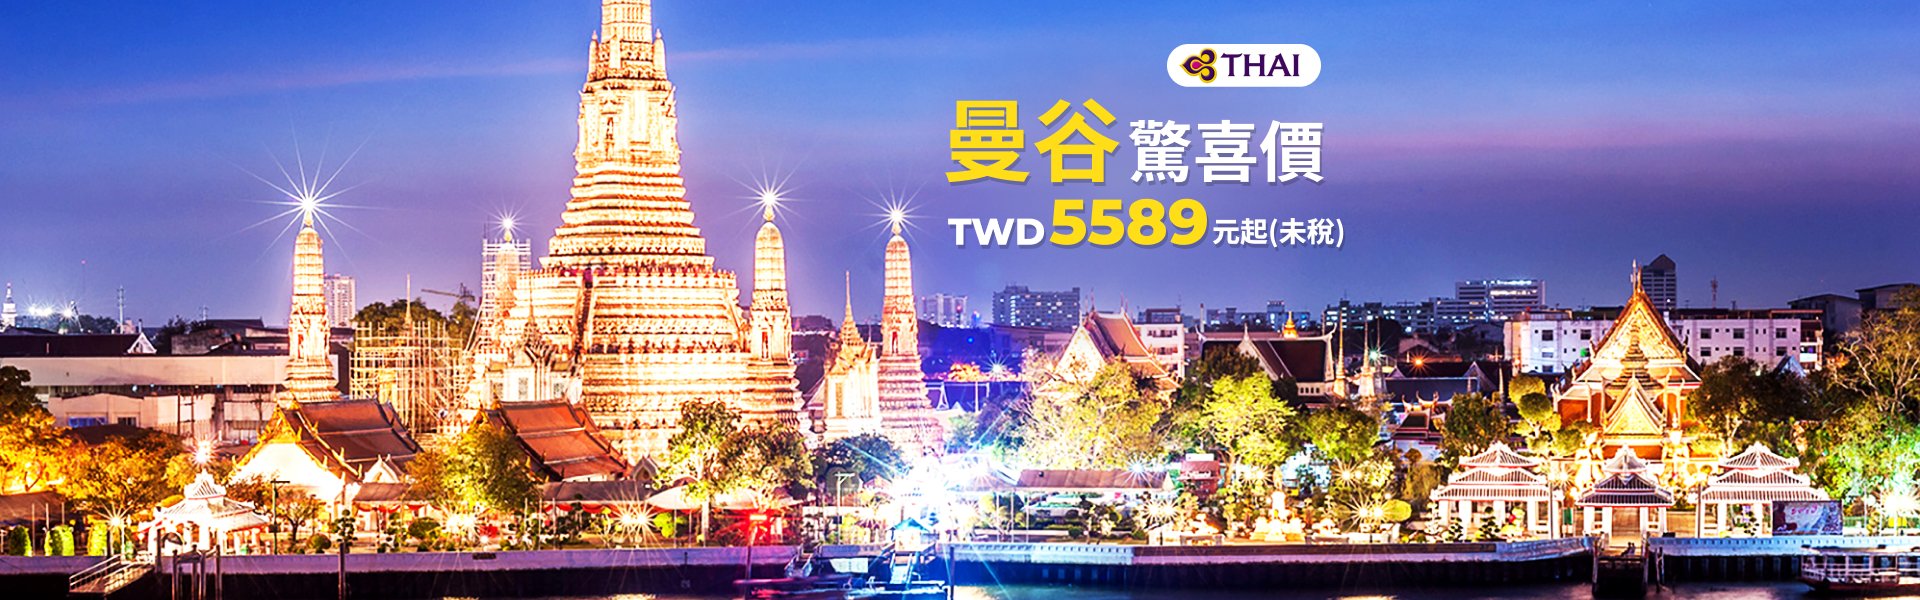 泰國航空-曼谷驚喜價 TWD5589元起(未稅)